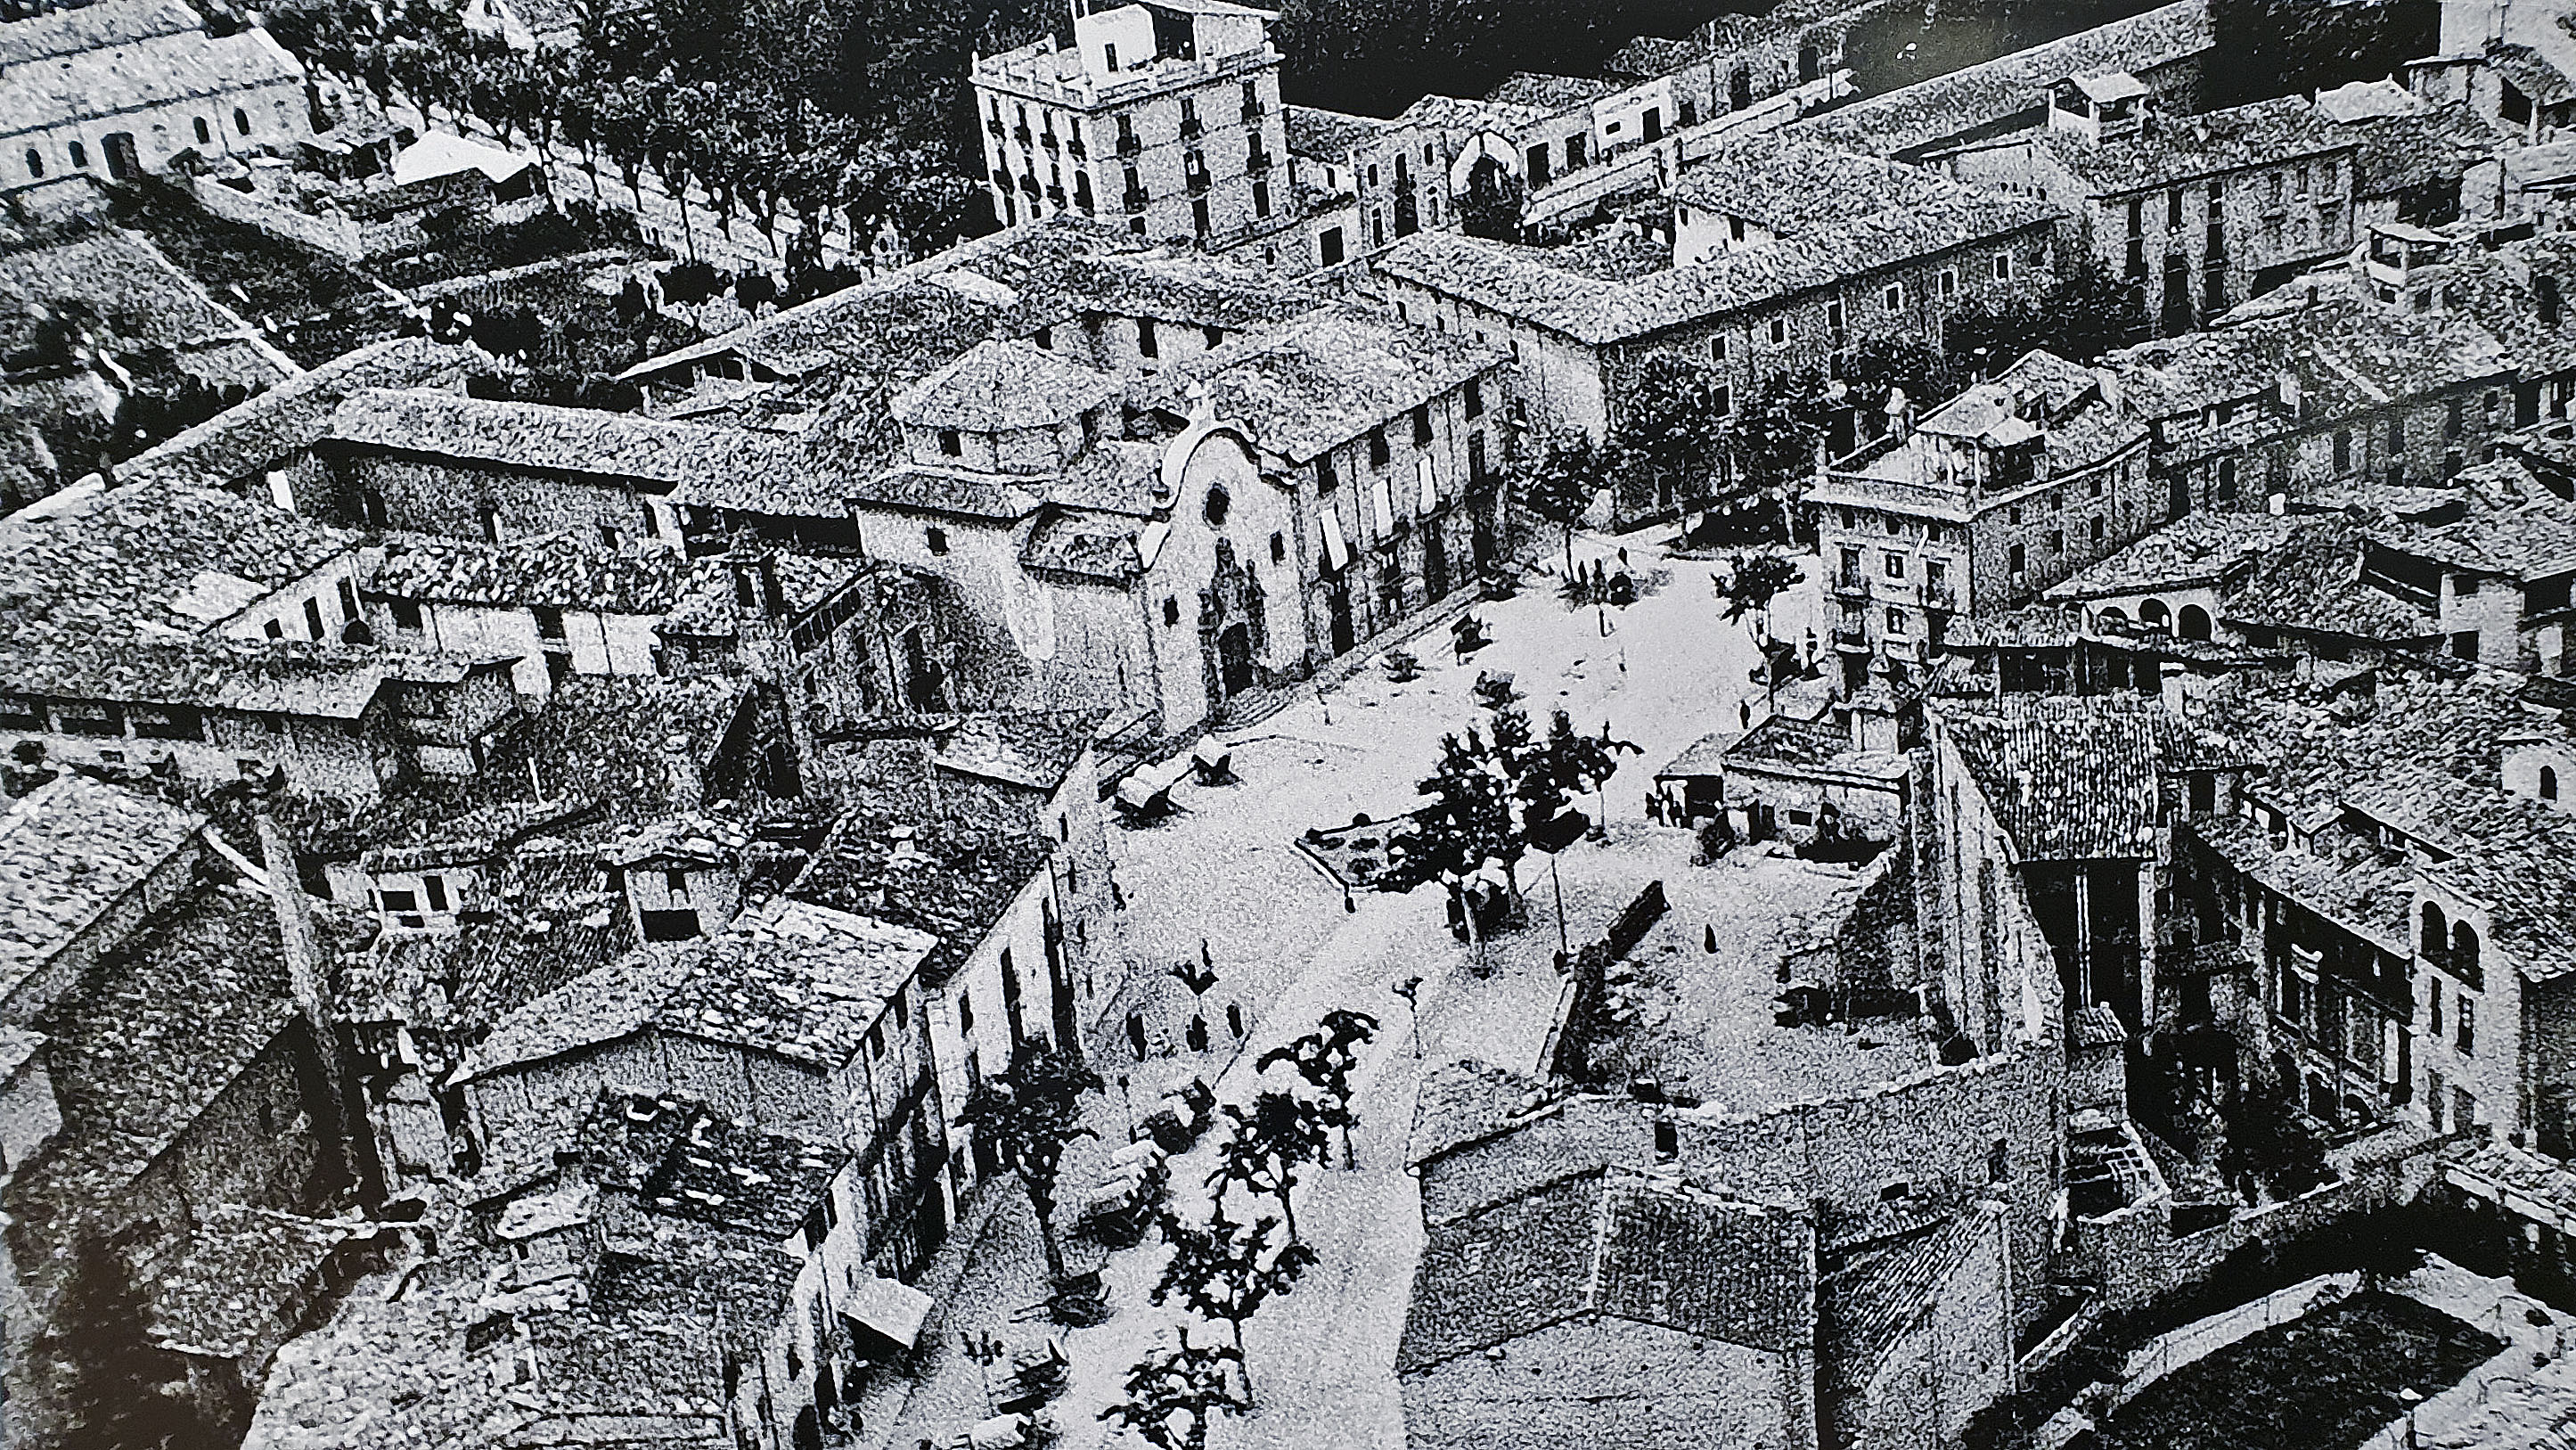 Una imatge dels anys 30 amb les restes del teatre cremat, captada per Joan Gaspar i que aquests dies s'exposa a la seu de la Fundació Antiga Caixa Manlleu, a Vic